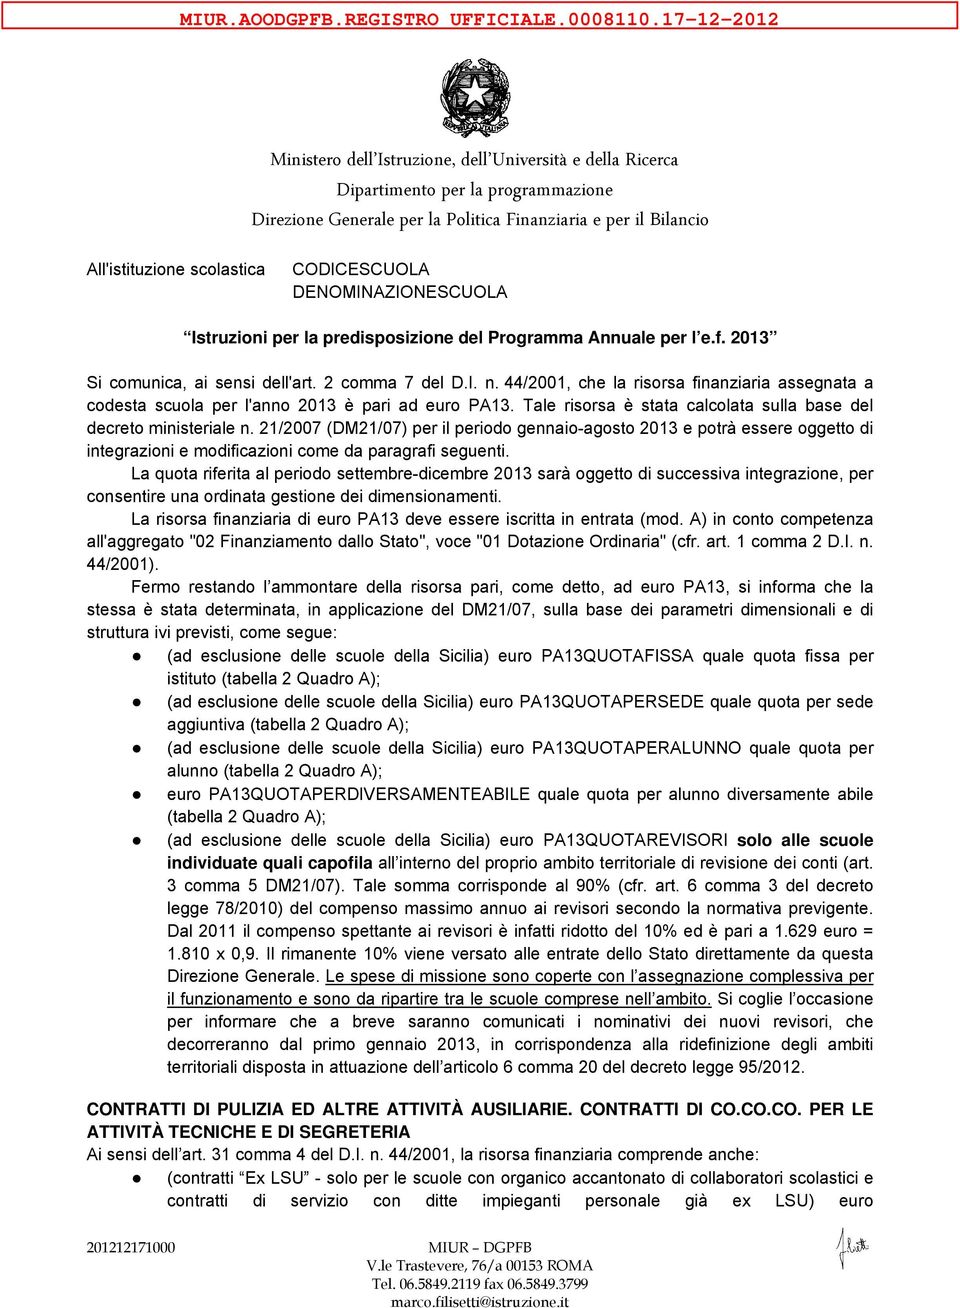 2013 Si comunica, ai sensi dell'art. 2 comma 7 del D.I. n. 44/2001, che la risorsa finanziaria assegnata a codesta scuola per l'anno 2013 è pari ad euro PA13.